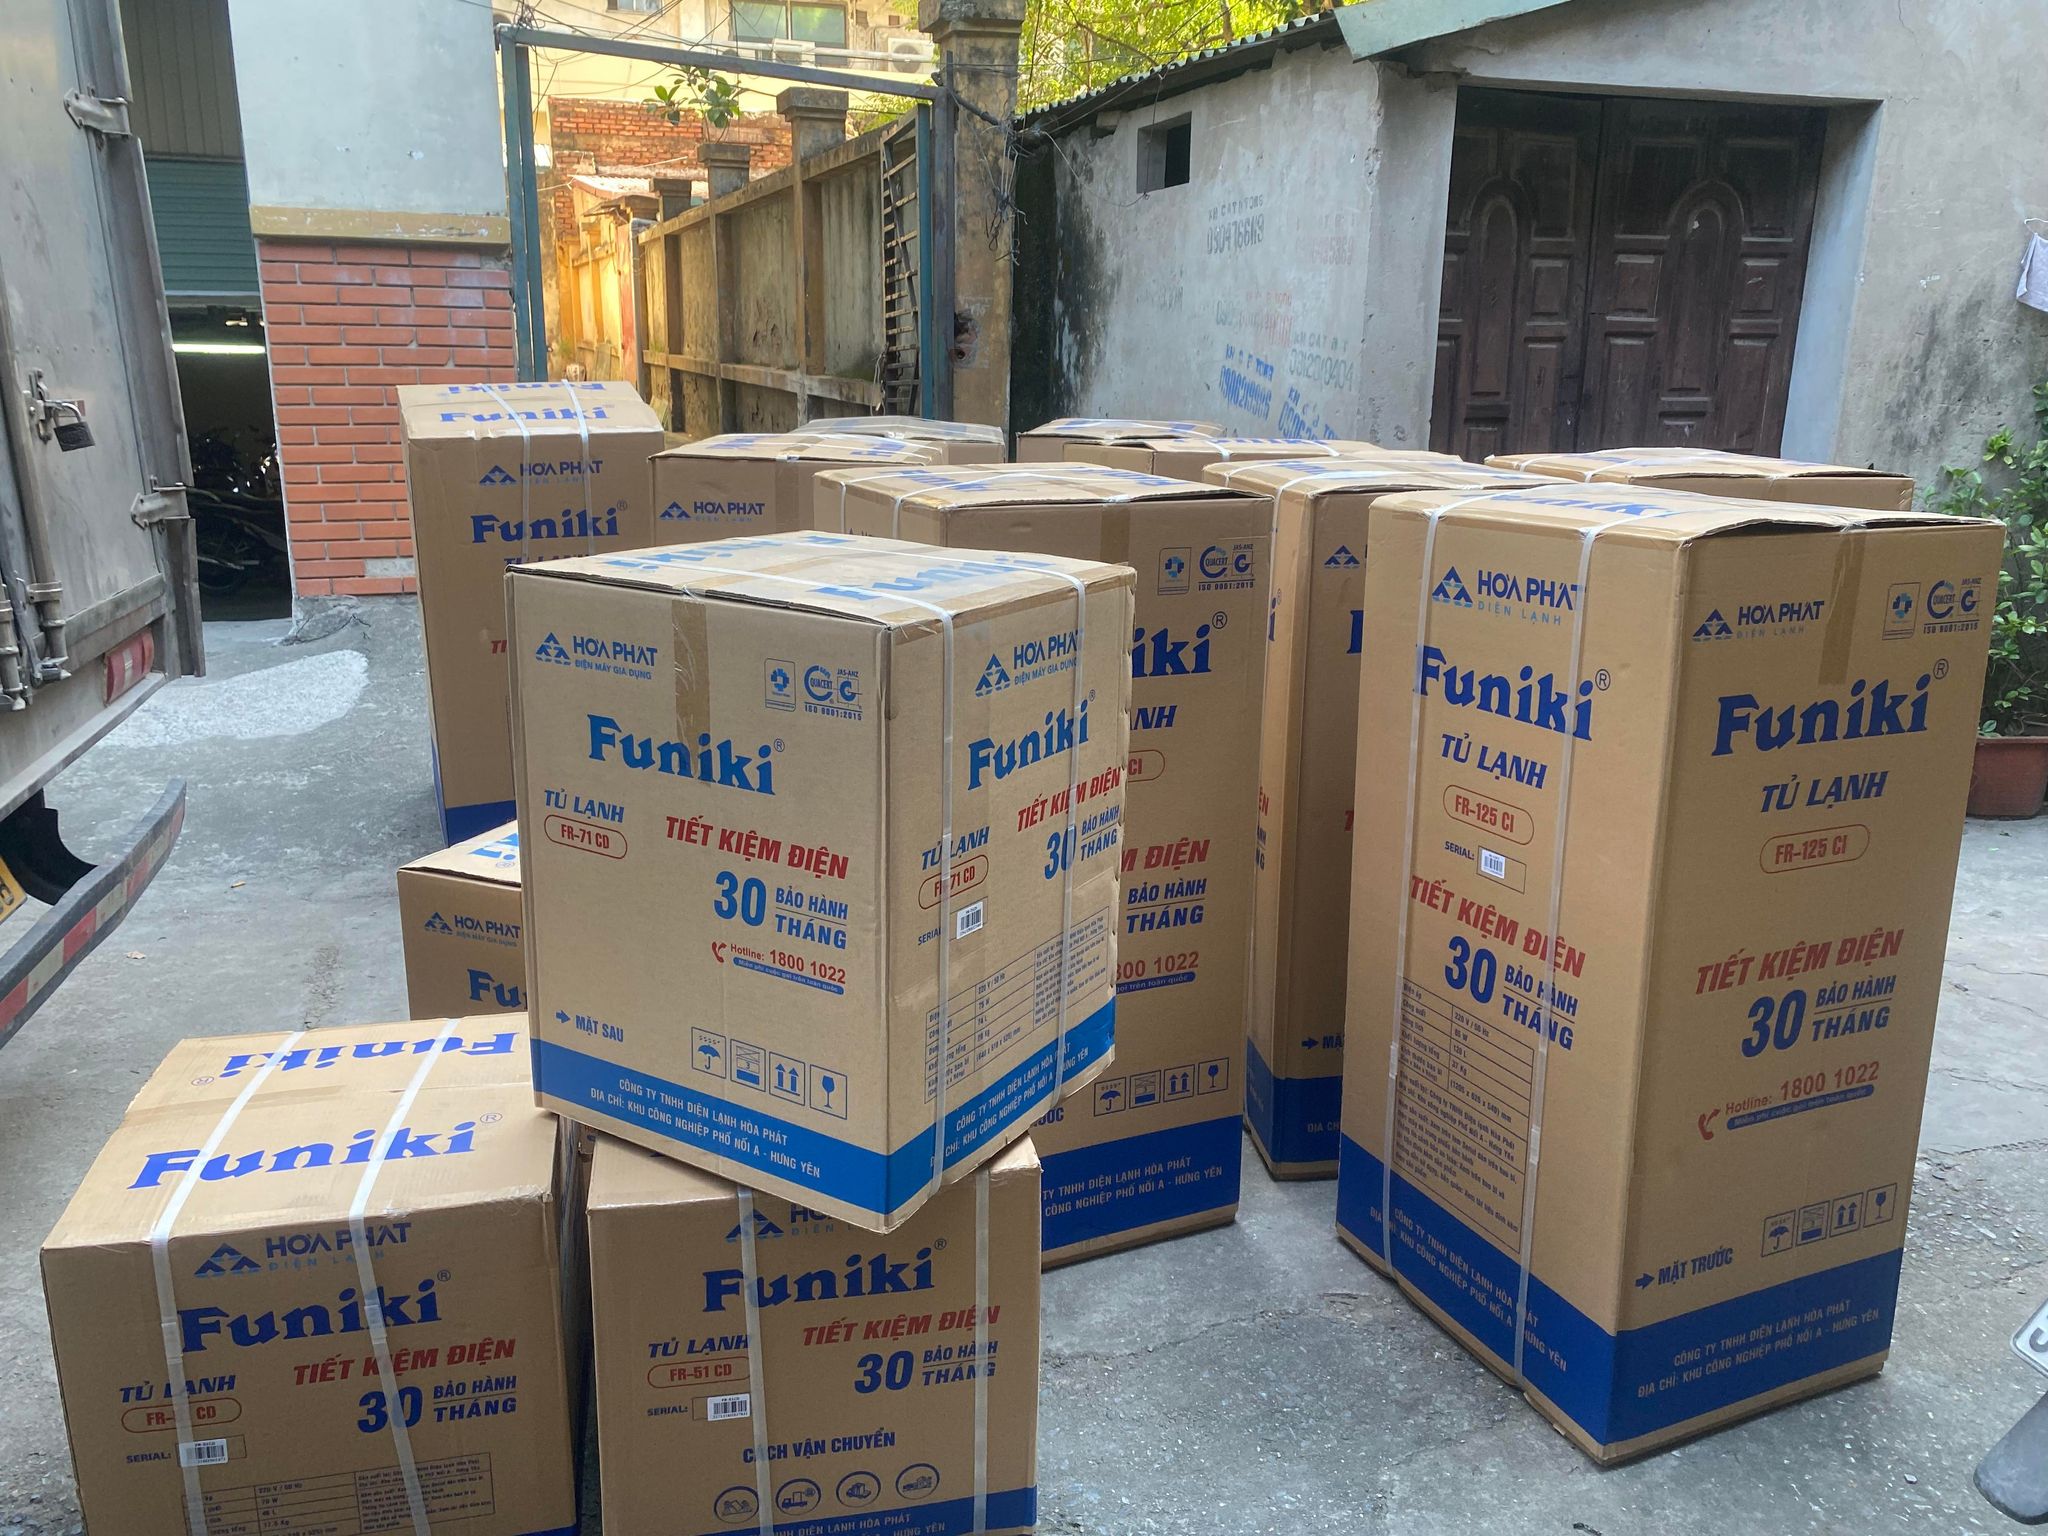 [FREESHIP HN]Tủ lạnh Funiki FR-71CD 70 lít- Hàng chính hãng (Bảo hành 30 tháng)